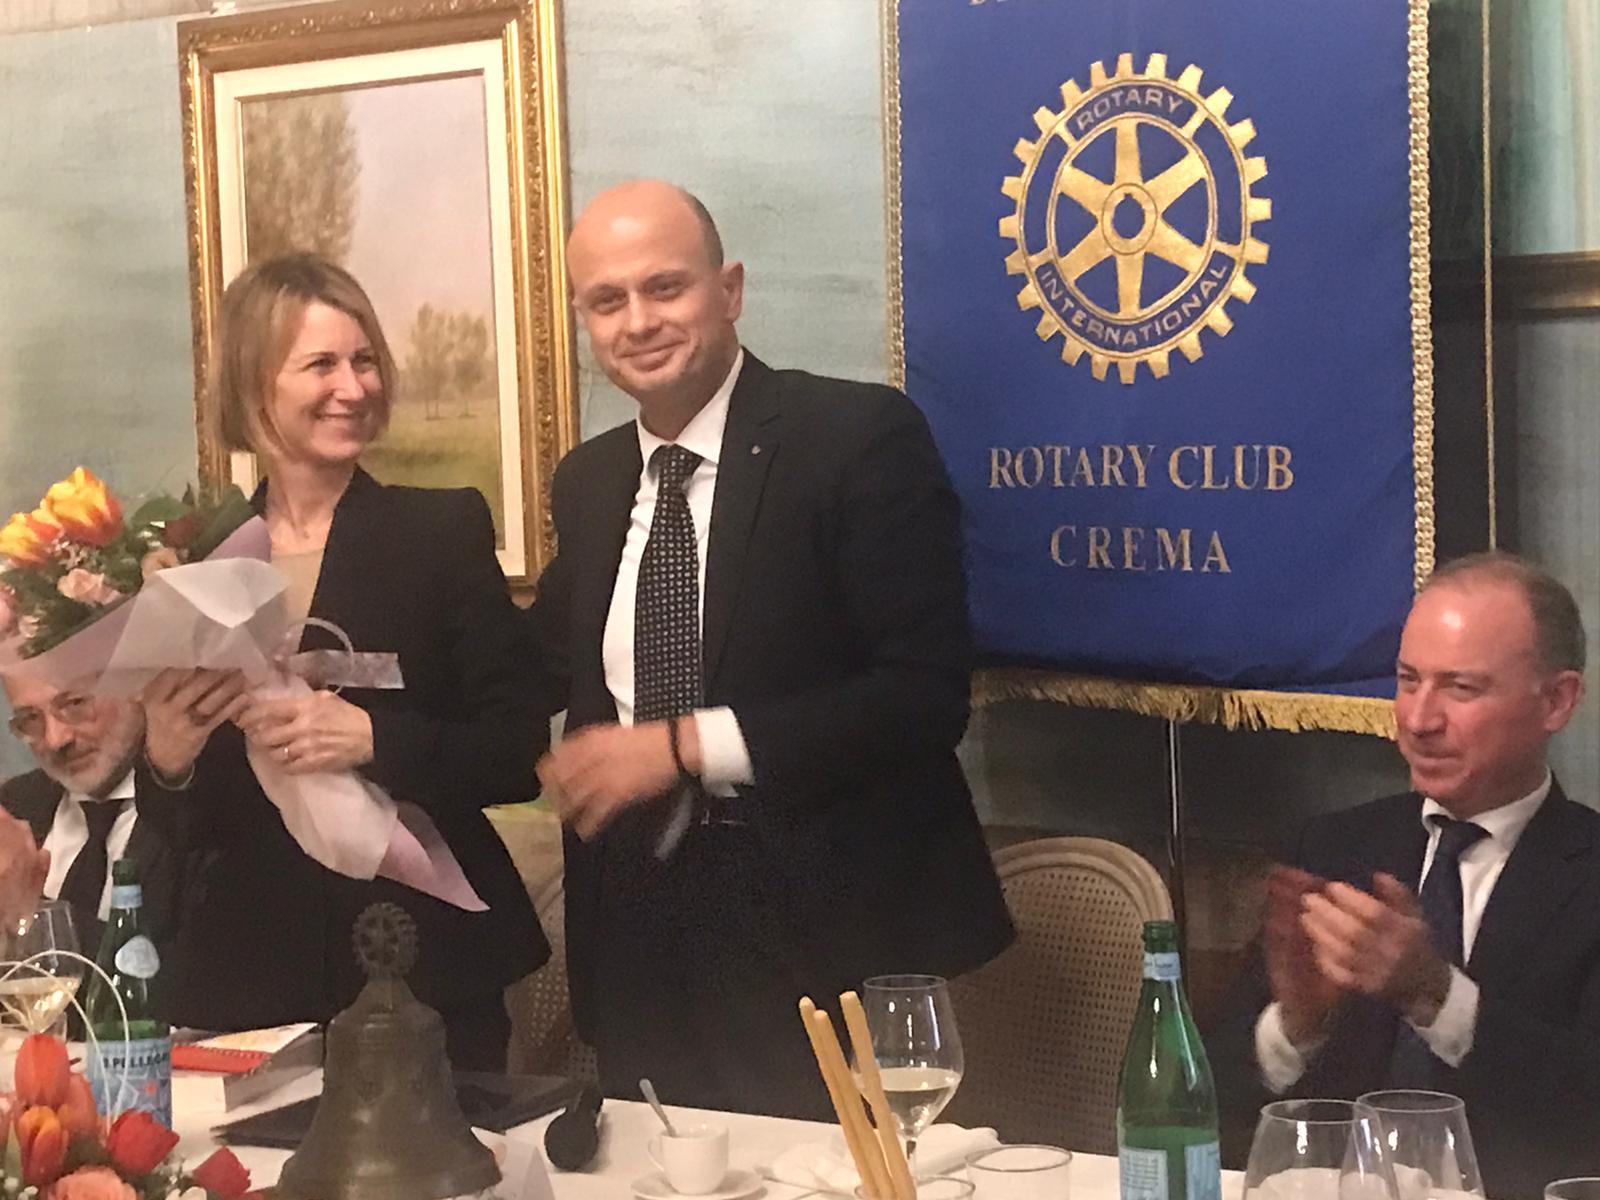 Al Rotary Club Crema, una conviviale in ricordo di Mario Buzzella, compianto socio e Presidente